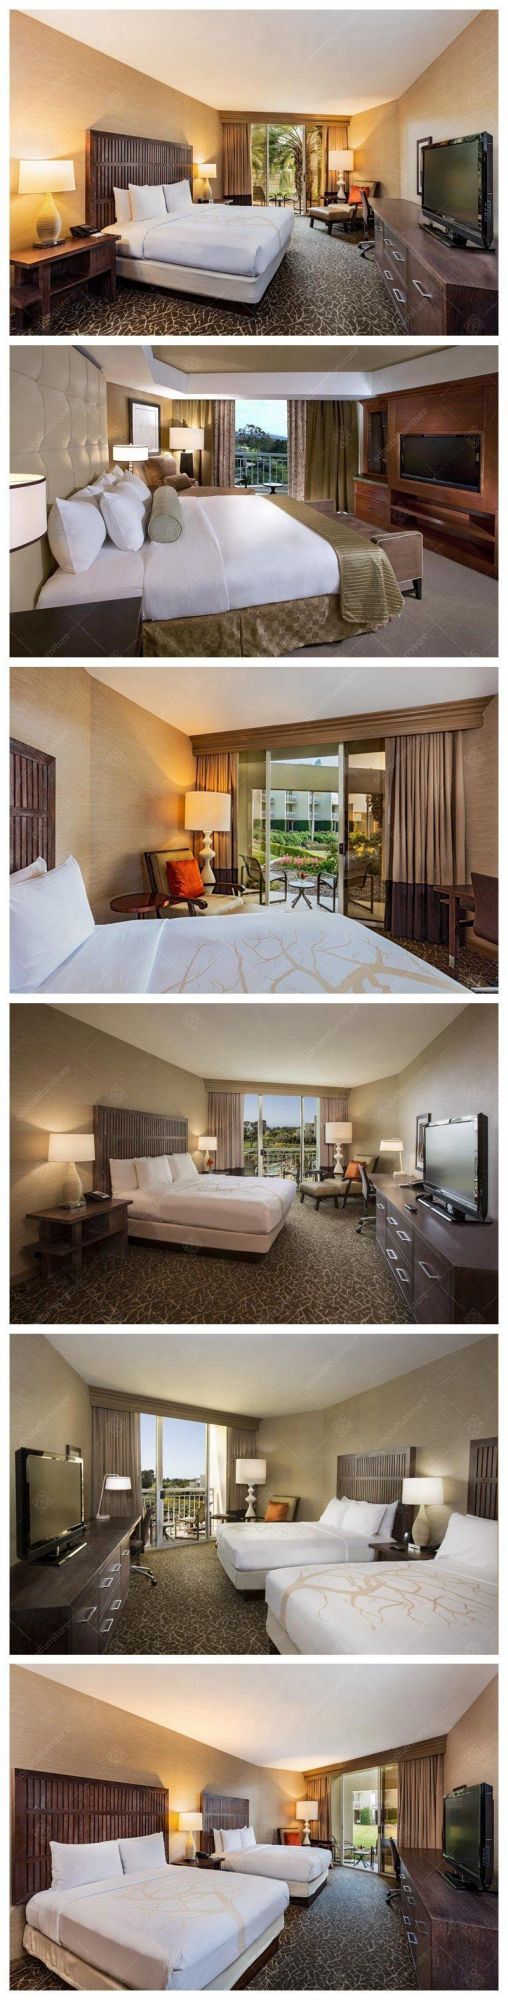 Concise Design Wooden Resort Hotel Bedroom Furniture Sets for Sale